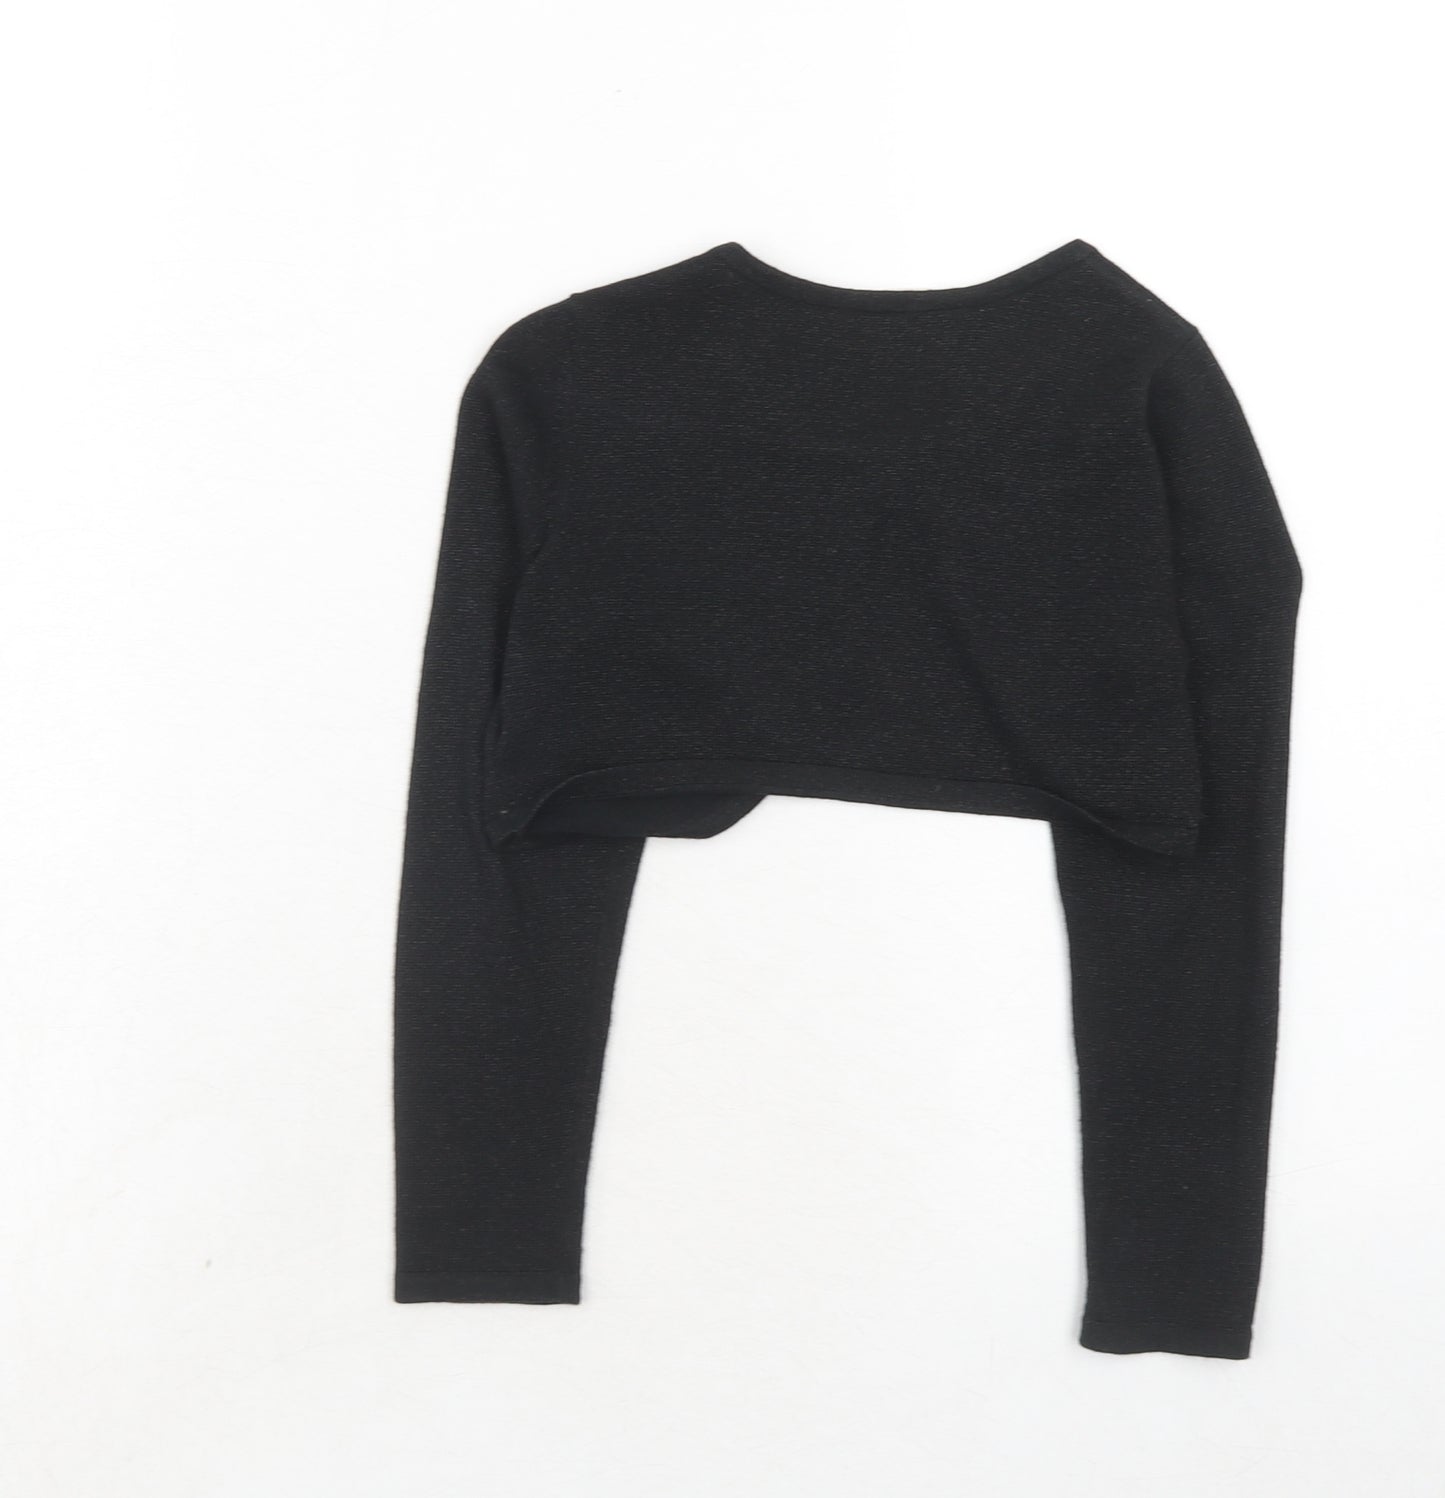 H&M Girls Black Scoop Neck Cotton Shrug Jumper Size 4-5 Years Button